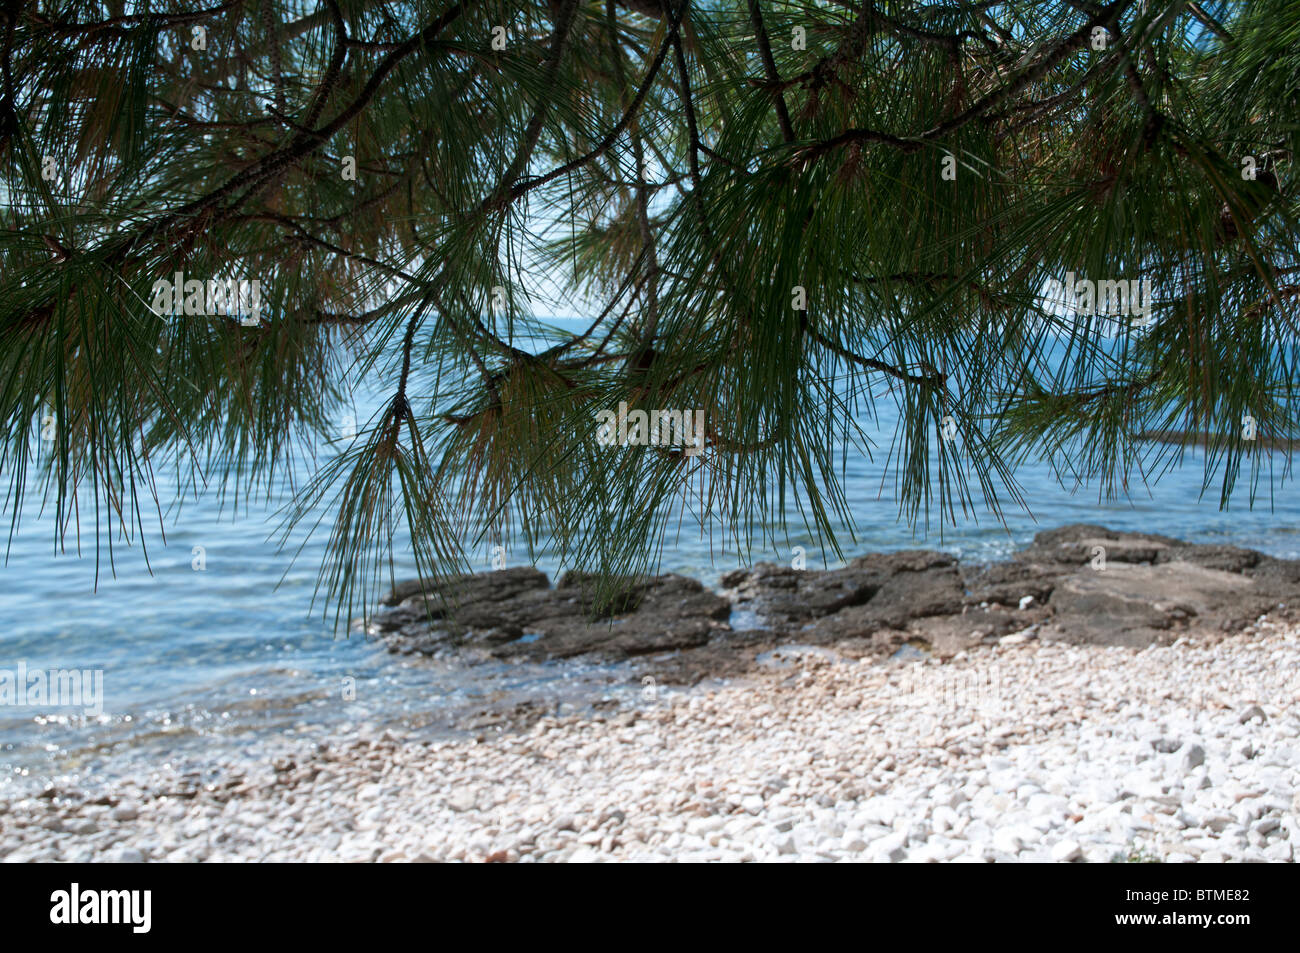 ruhigen entspannenden Blick unter Pinien von der ruhigen ruhigen Stille Wasser des Adriatischen Meeres Stockfoto